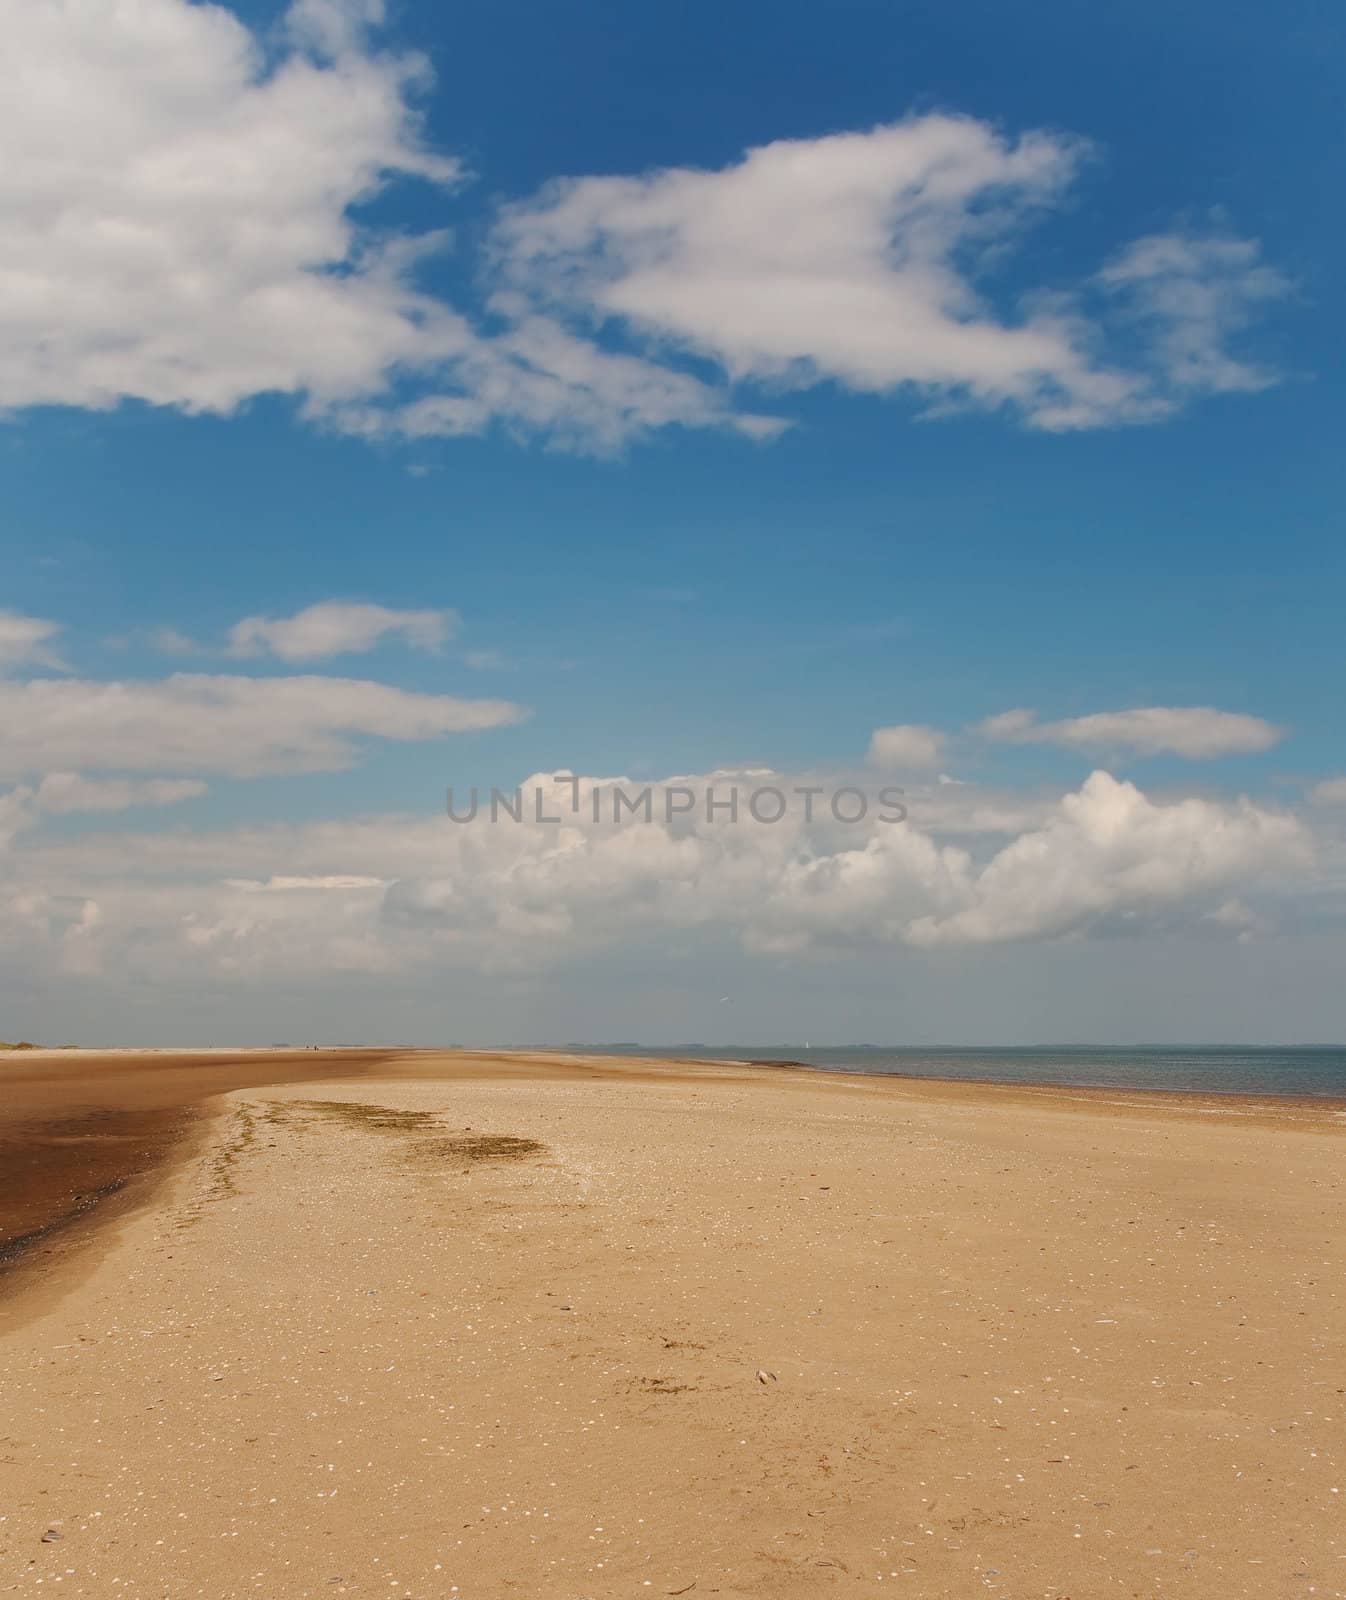 outdoor photo of an empty beach under a blue sky